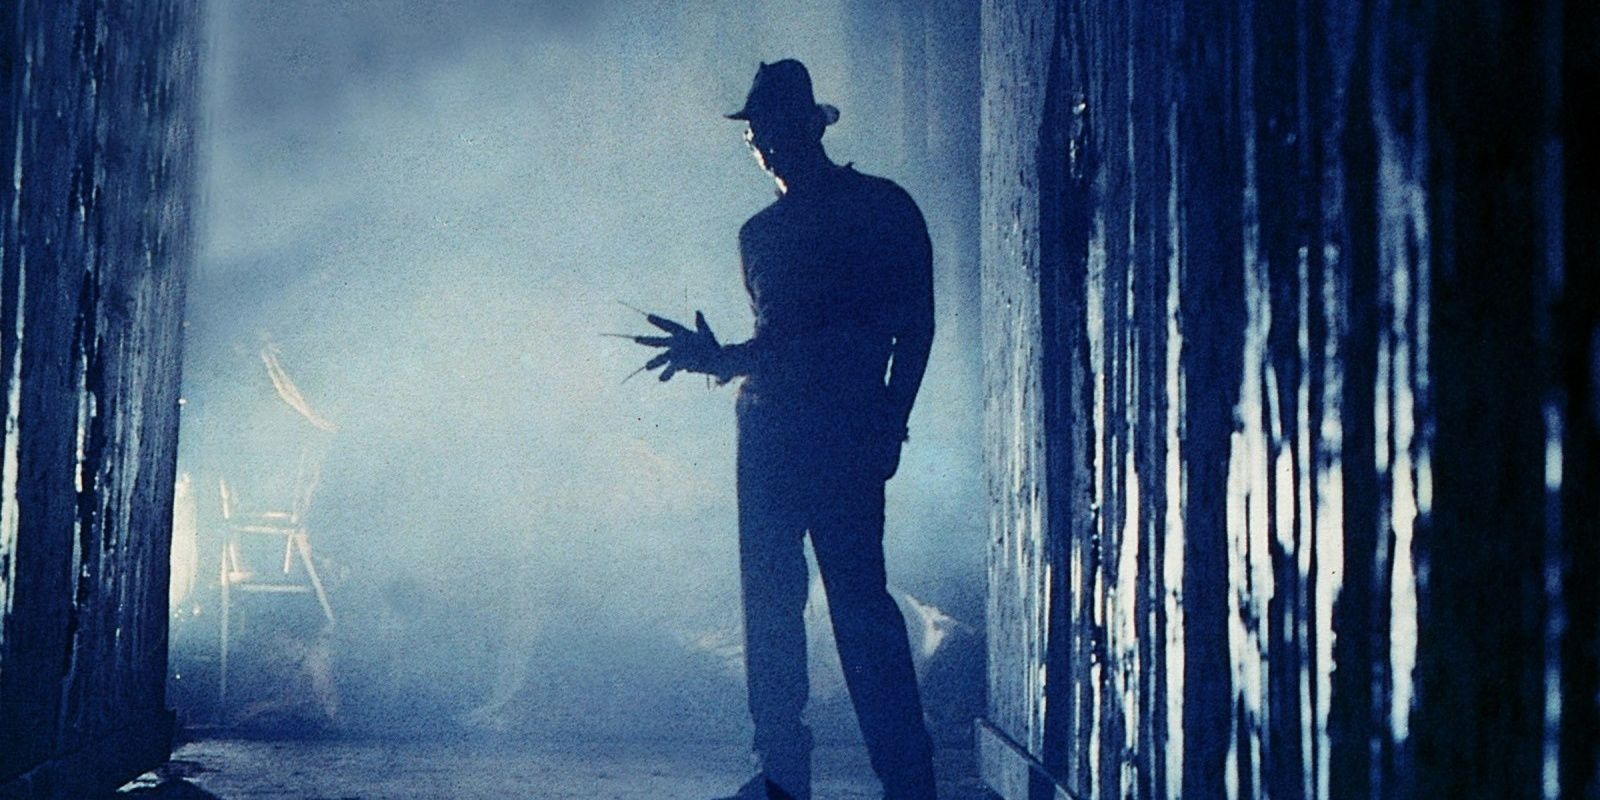 Freddy Krueger in silhouette in A Nightmare on Elm Street